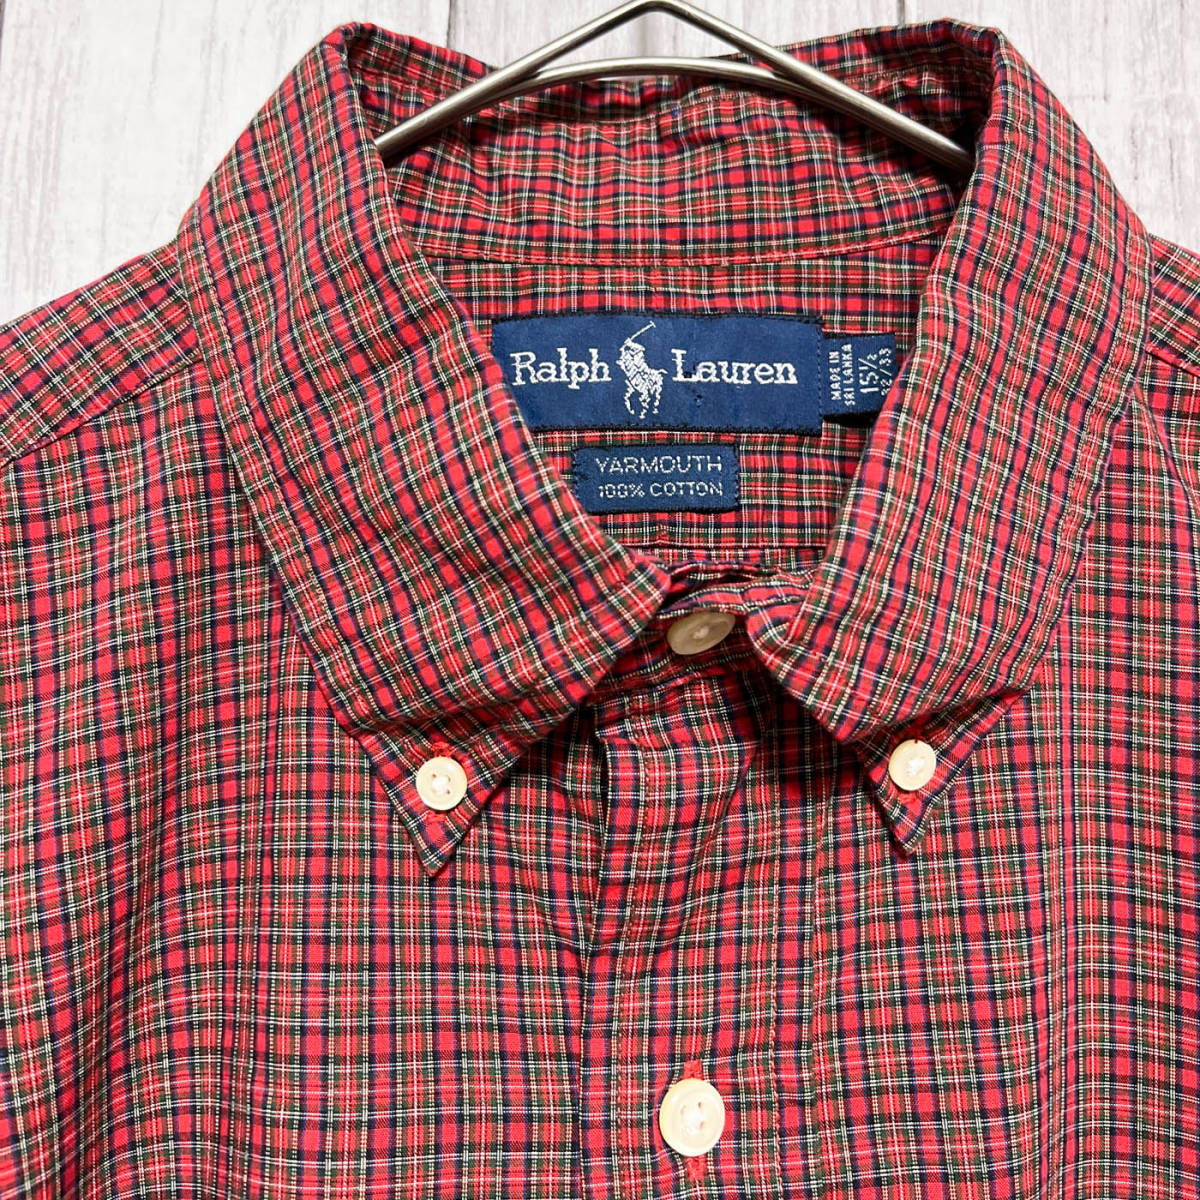 ラルフローレン Ralph Lauren YARMOUTH チェックシャツ 長袖シャツ メンズ ワンポイント コットン100% サイズ15 1/2 Mサイズ 5‐166_画像5